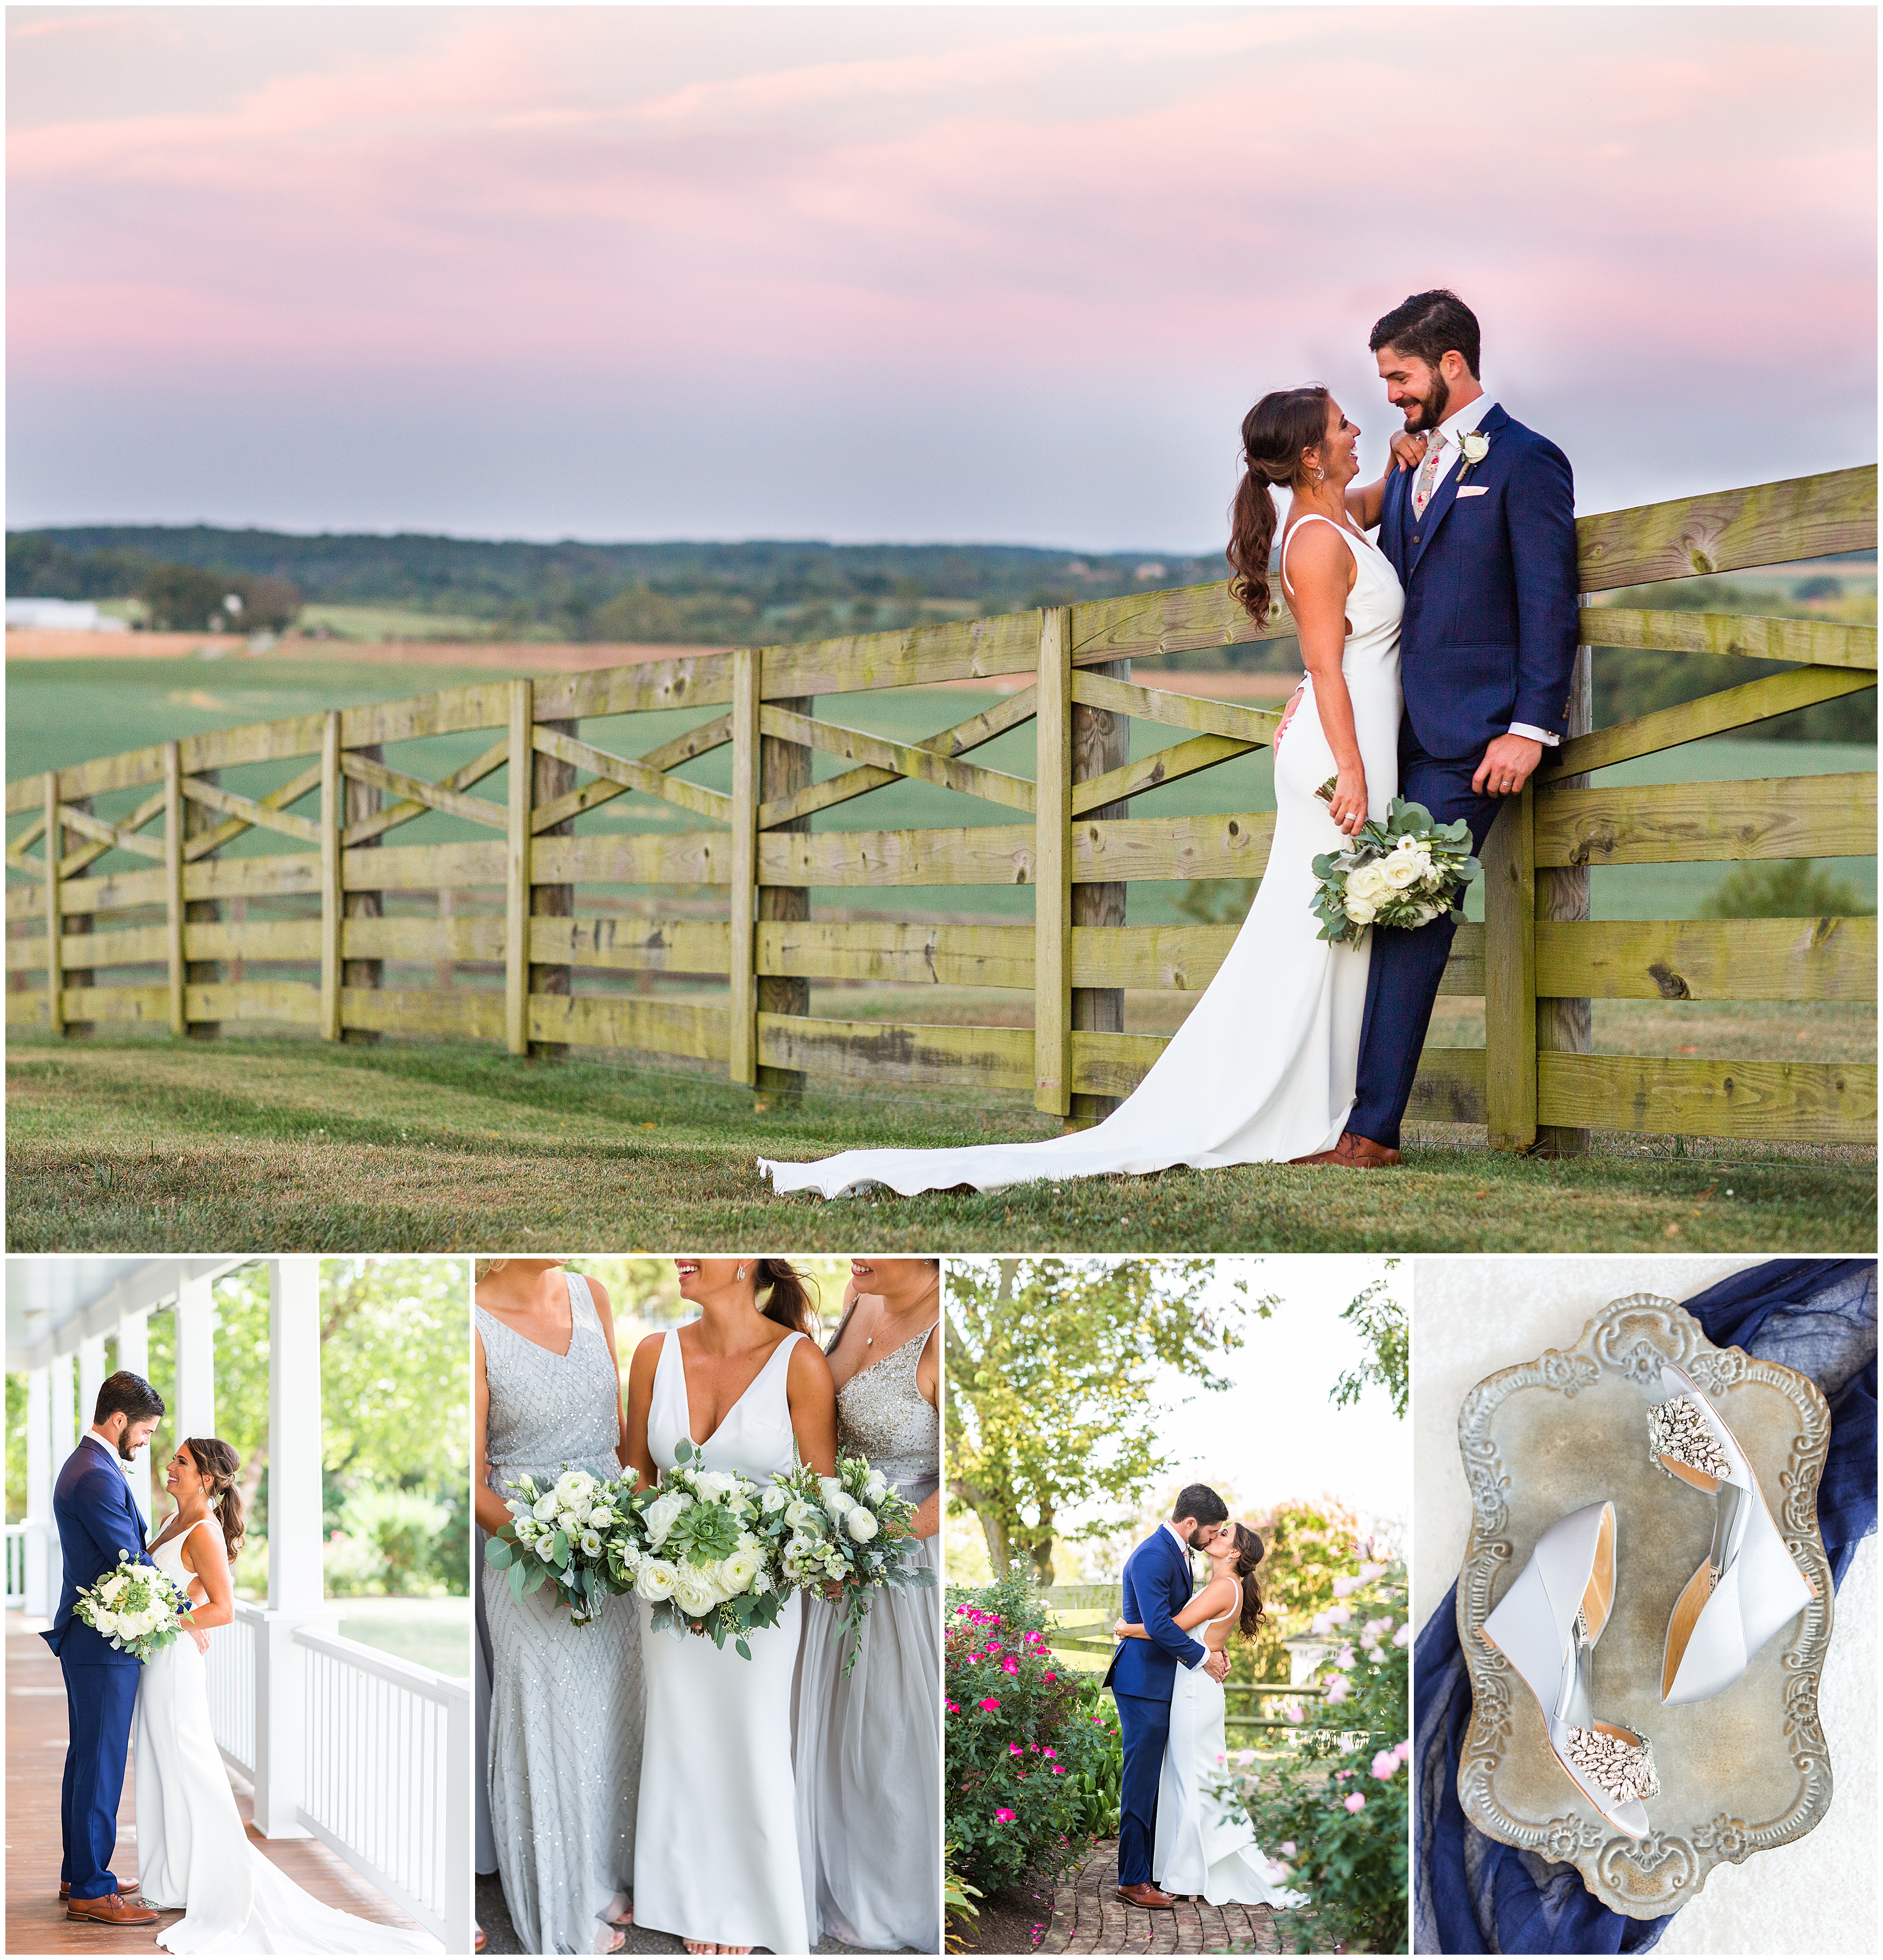 Walker's Overlook Wedding photographed by Maryland wedding photographer Alexandra Mandato Photography